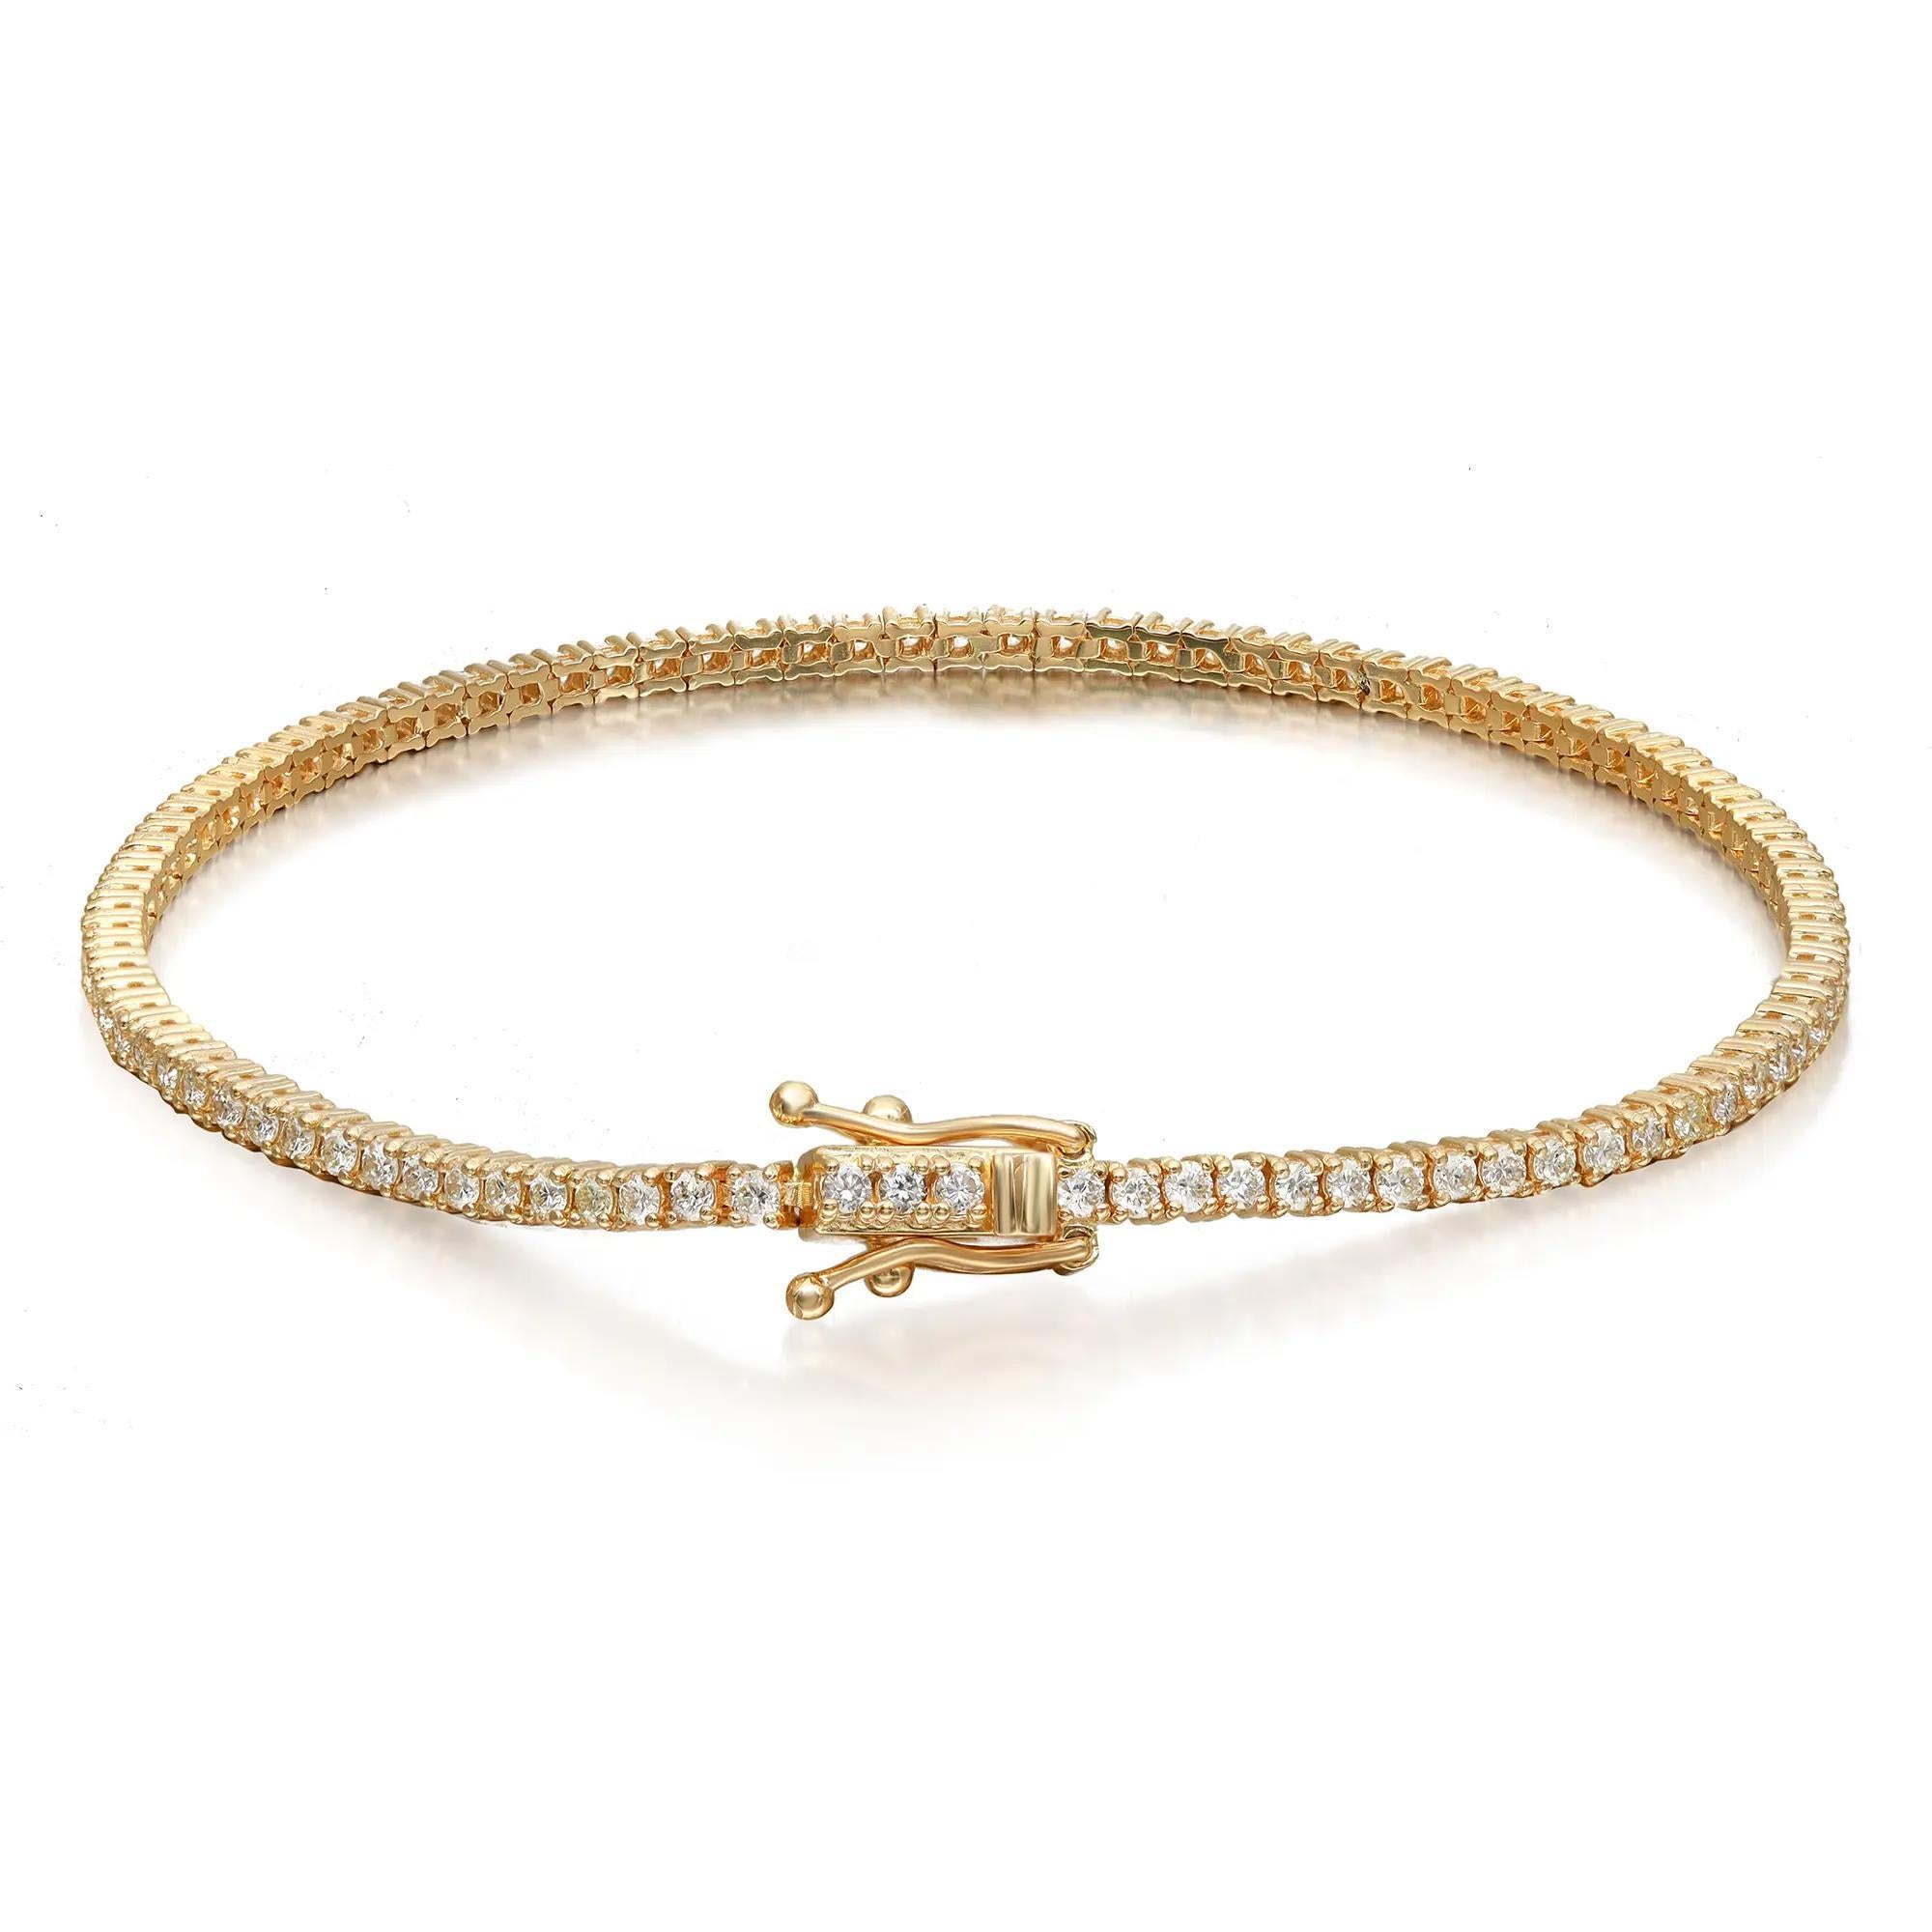 Ce magnifique bracelet de tennis Rachel Brilliante est orné de diamants ronds de taille brillante sertis sur de l'or jaune 14K lustré. Poids total des diamants blancs : 0,95 carat. Qualité du diamant : Couleur G-H et pureté VS-SI. Longueur du